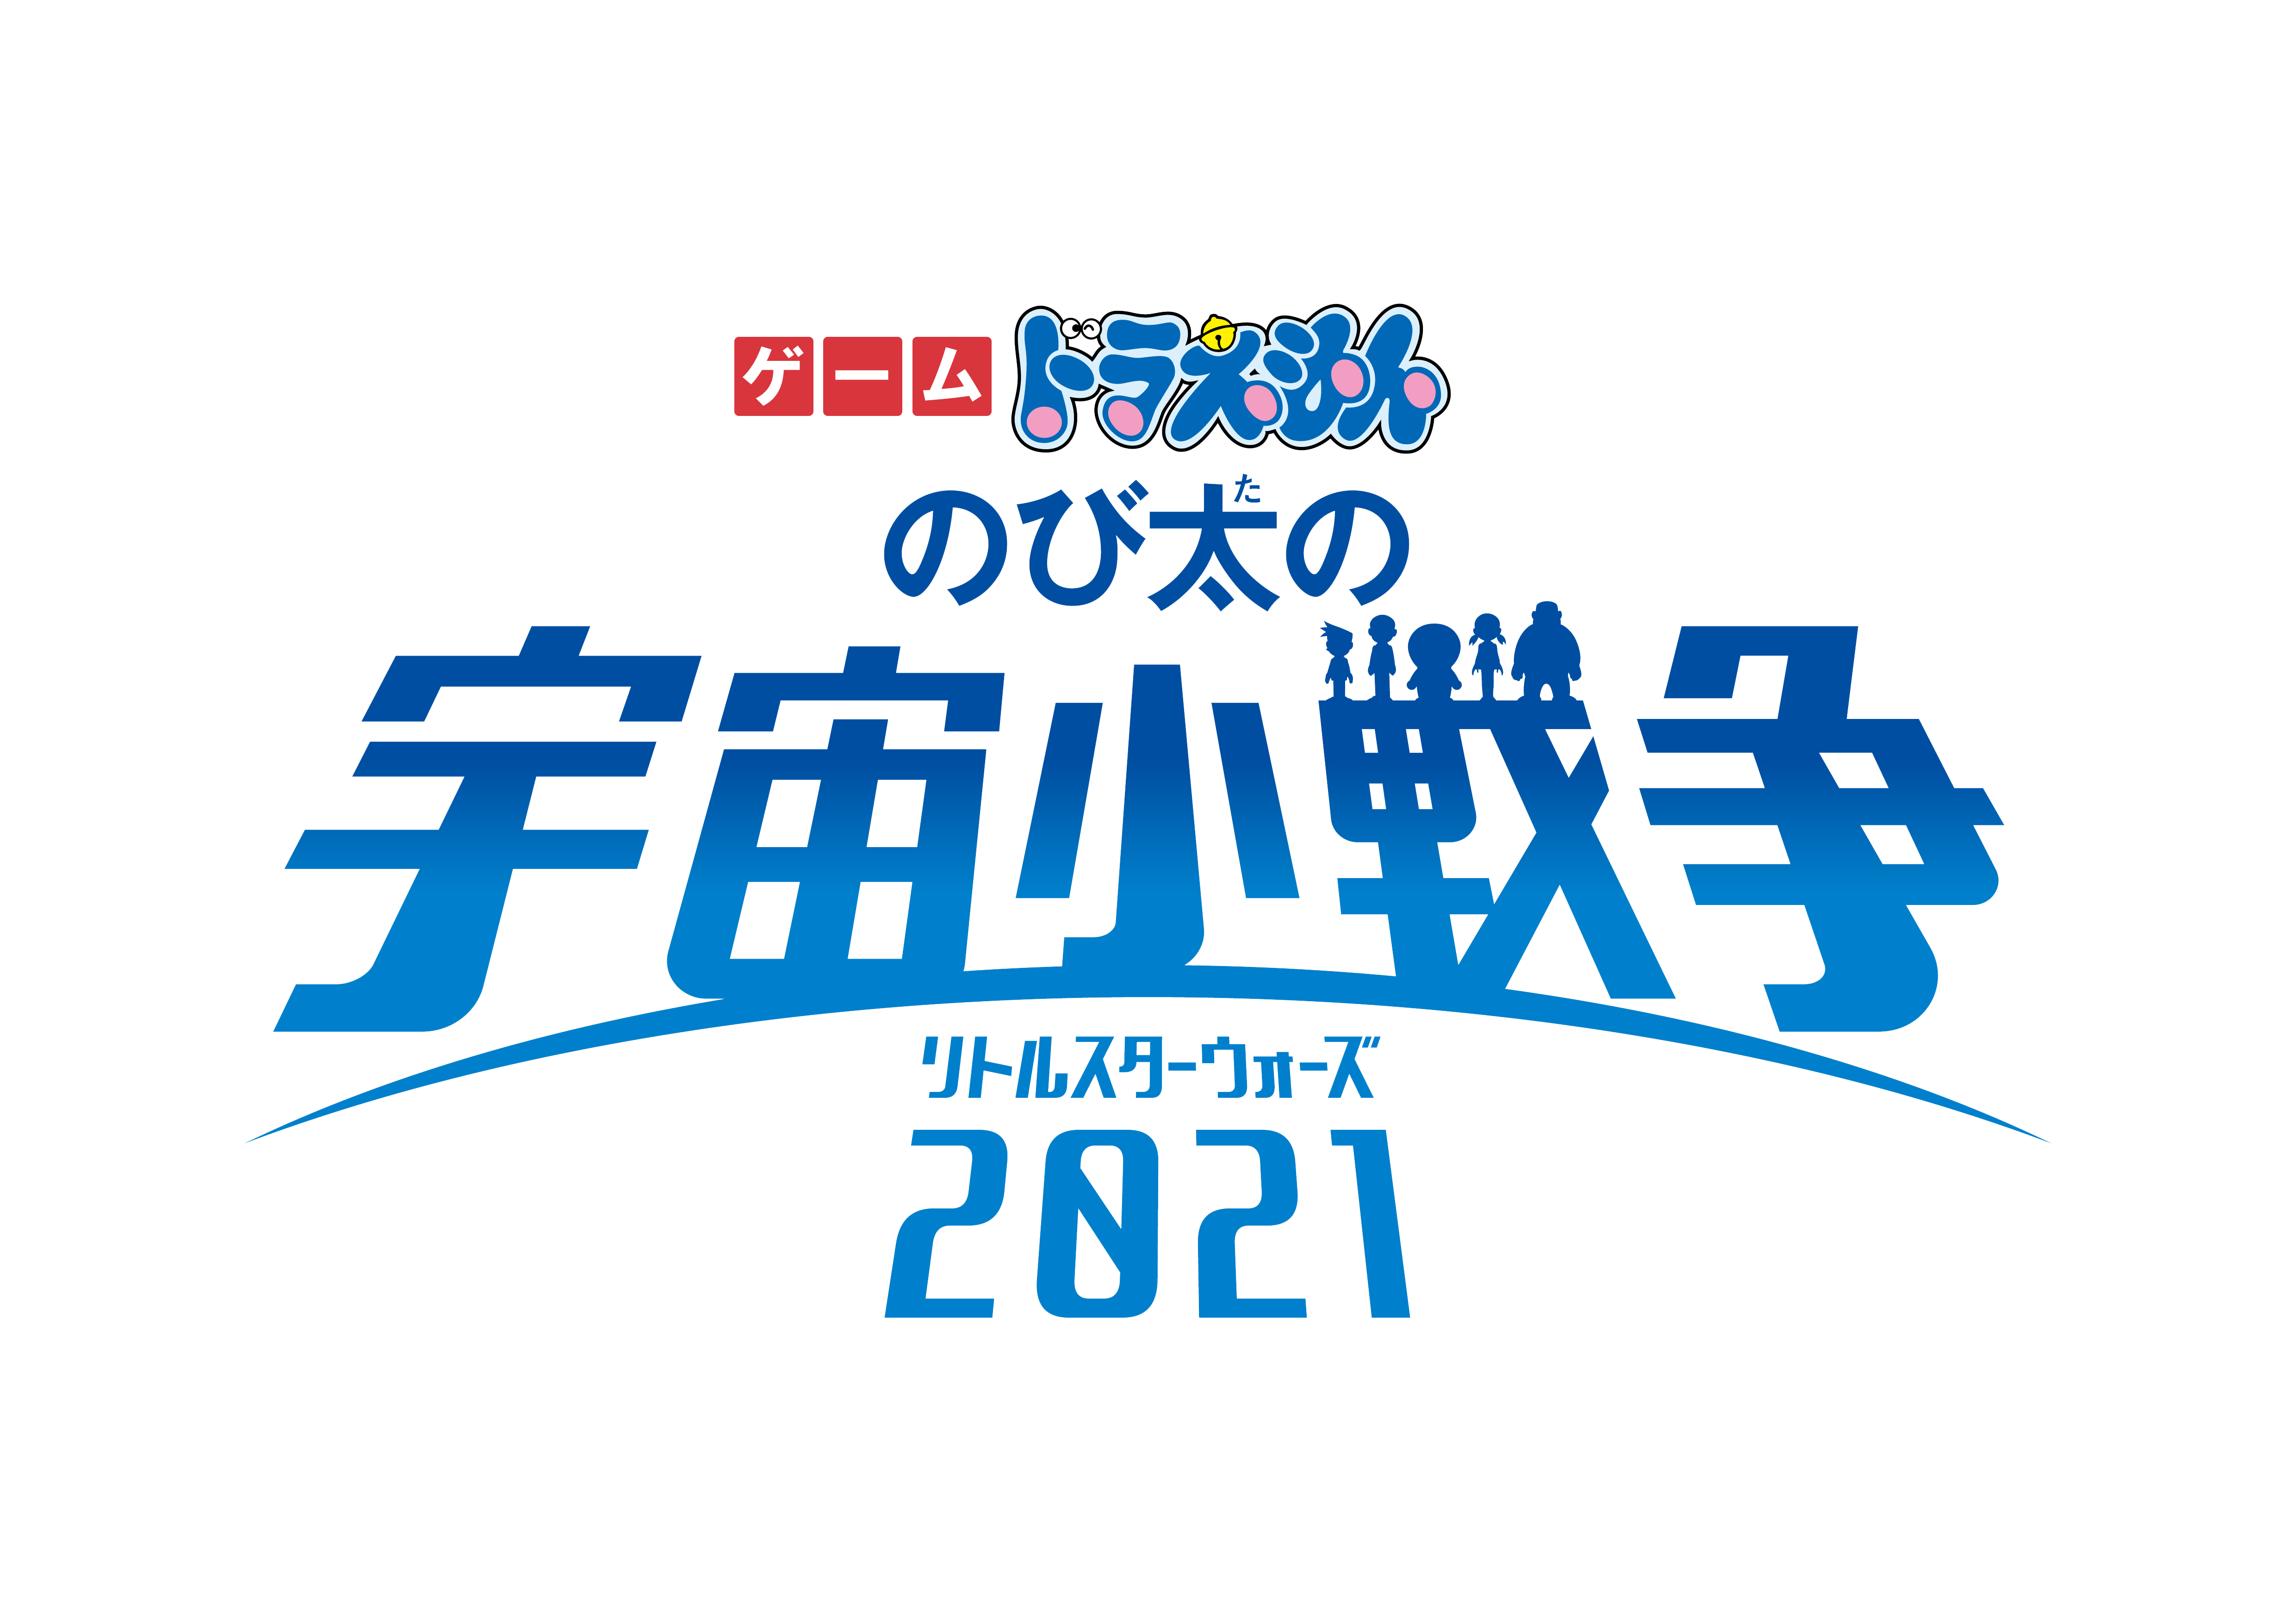 ゲーム ドラえもん のび太の宇宙小戦争 2021 2021年3月5日 金 発売決定 フリュー株式会社のプレスリリース